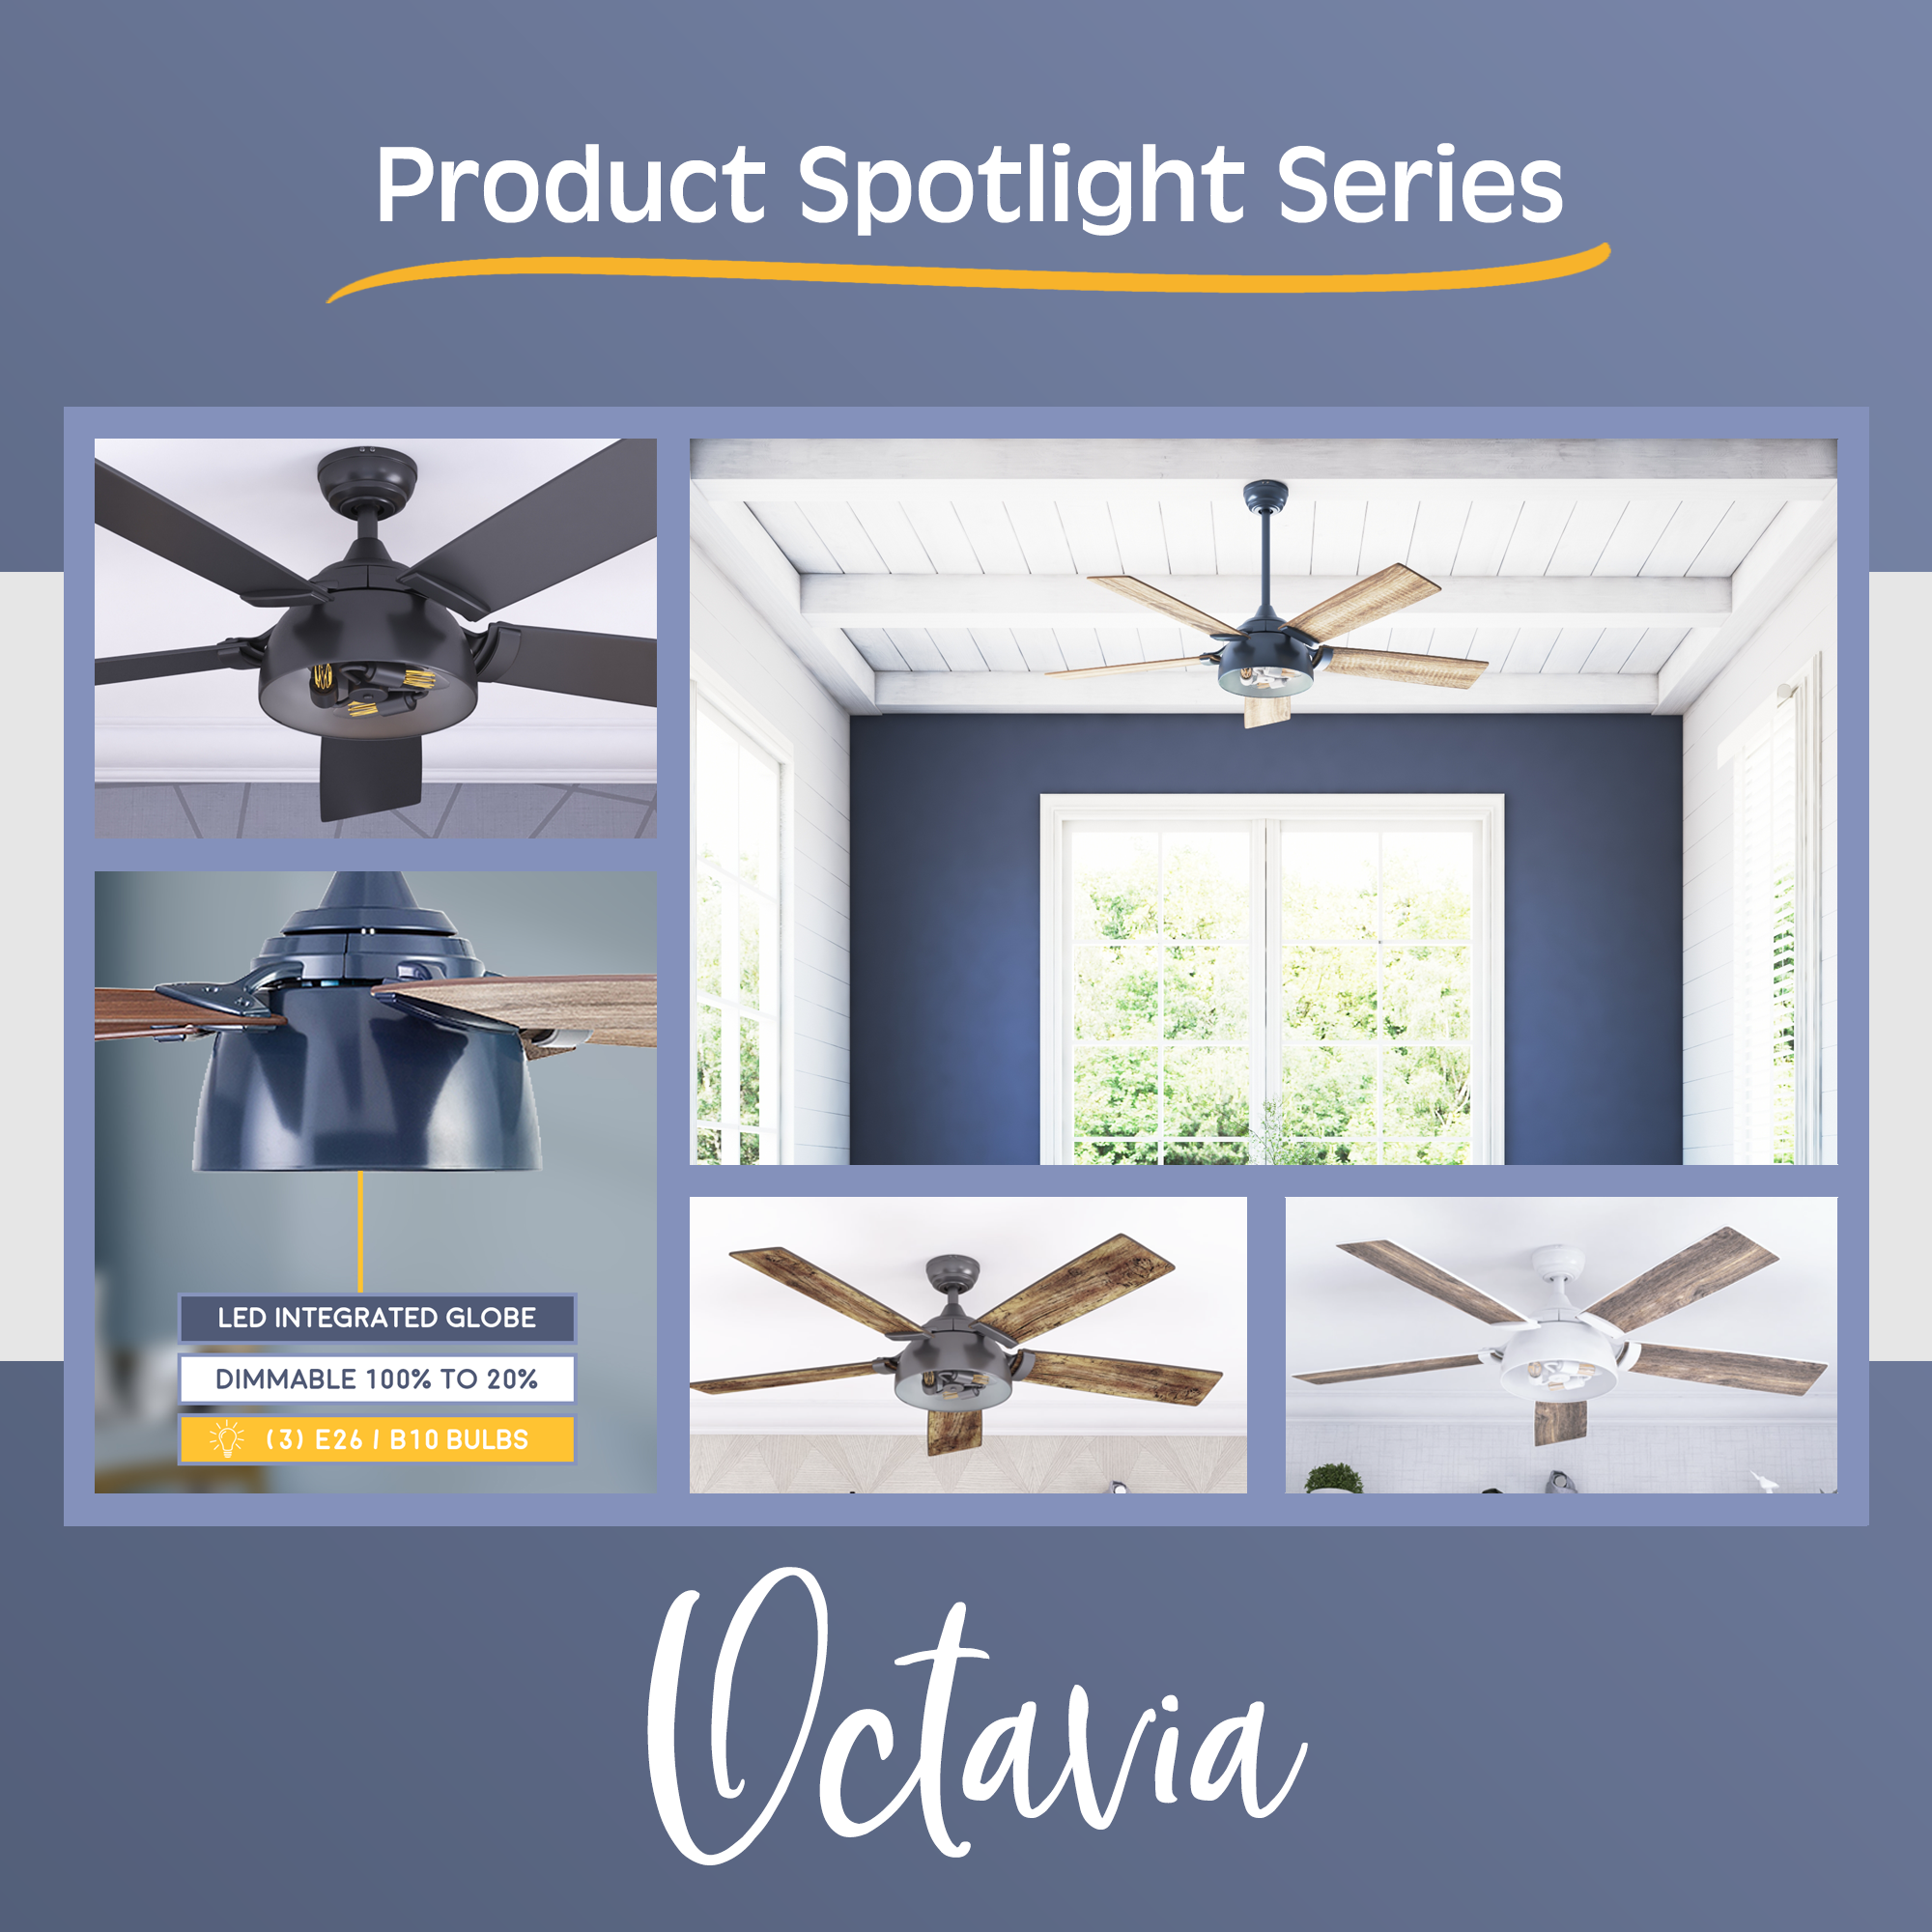 Product Spotlight: Octavia